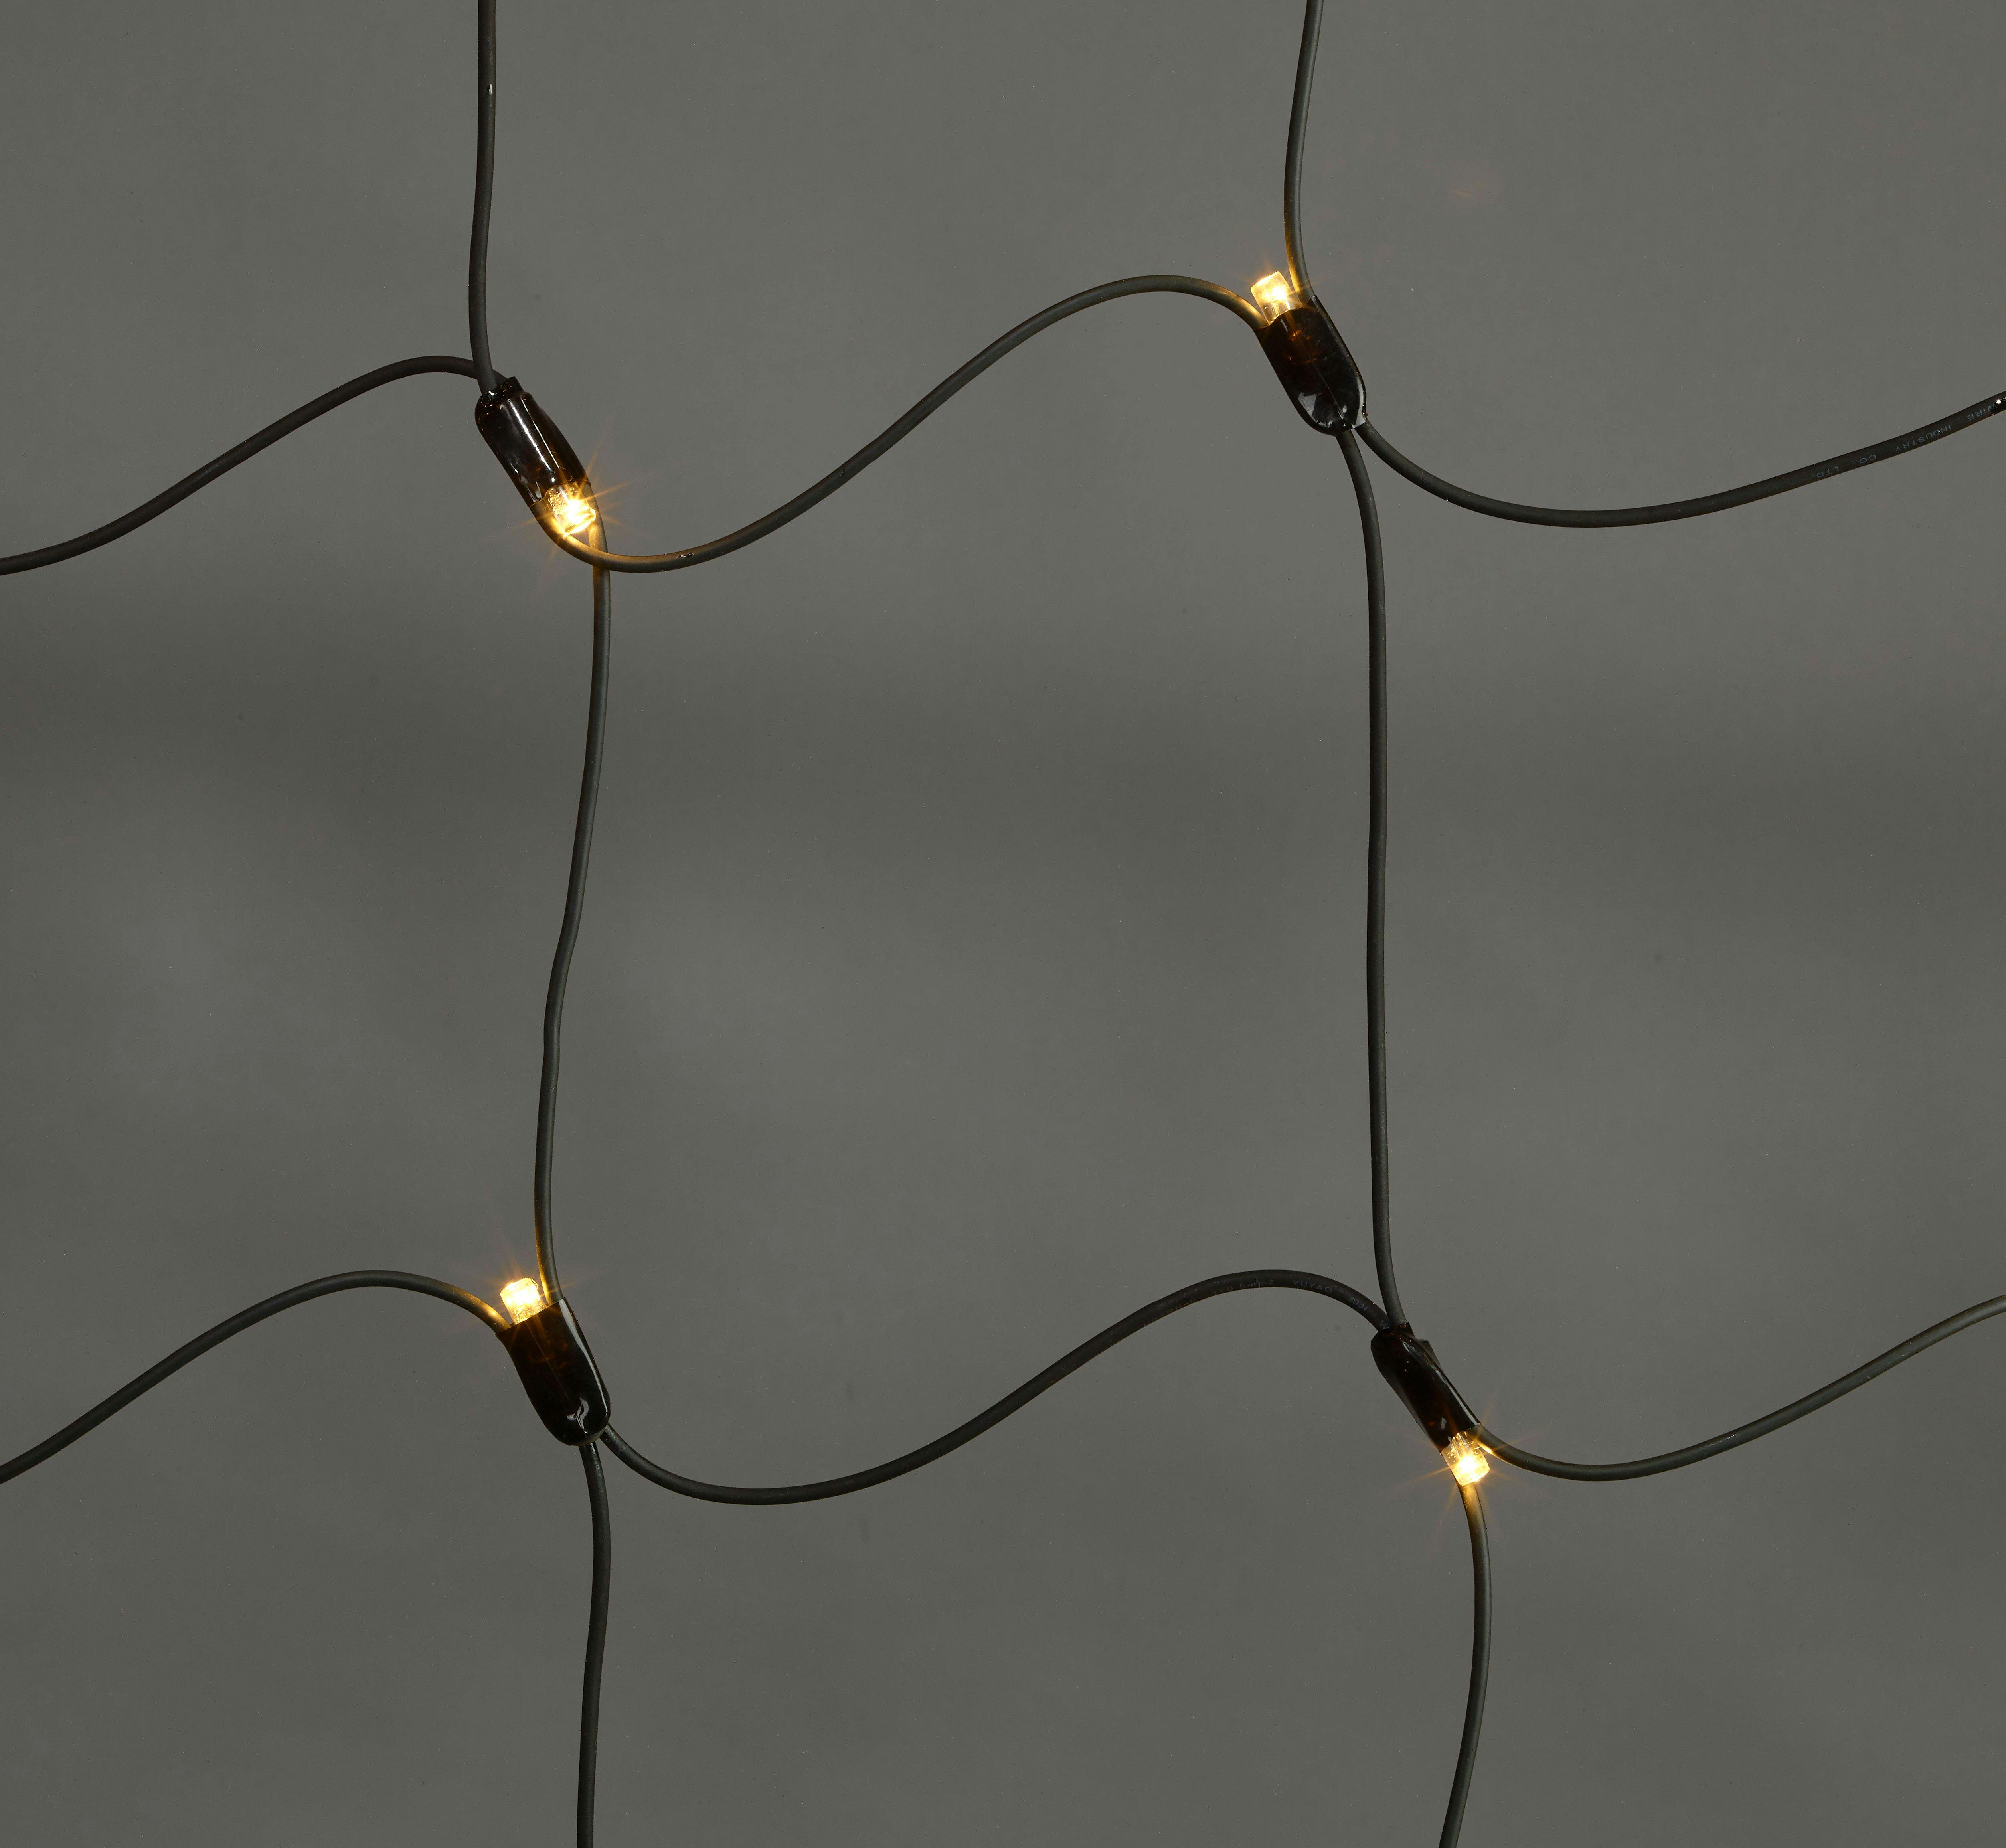 METRO Professional LED-Lichtervorhang, Gummi, 2 x 2 m, 200 LED, 18.4 W,  warm- und kaltweiß